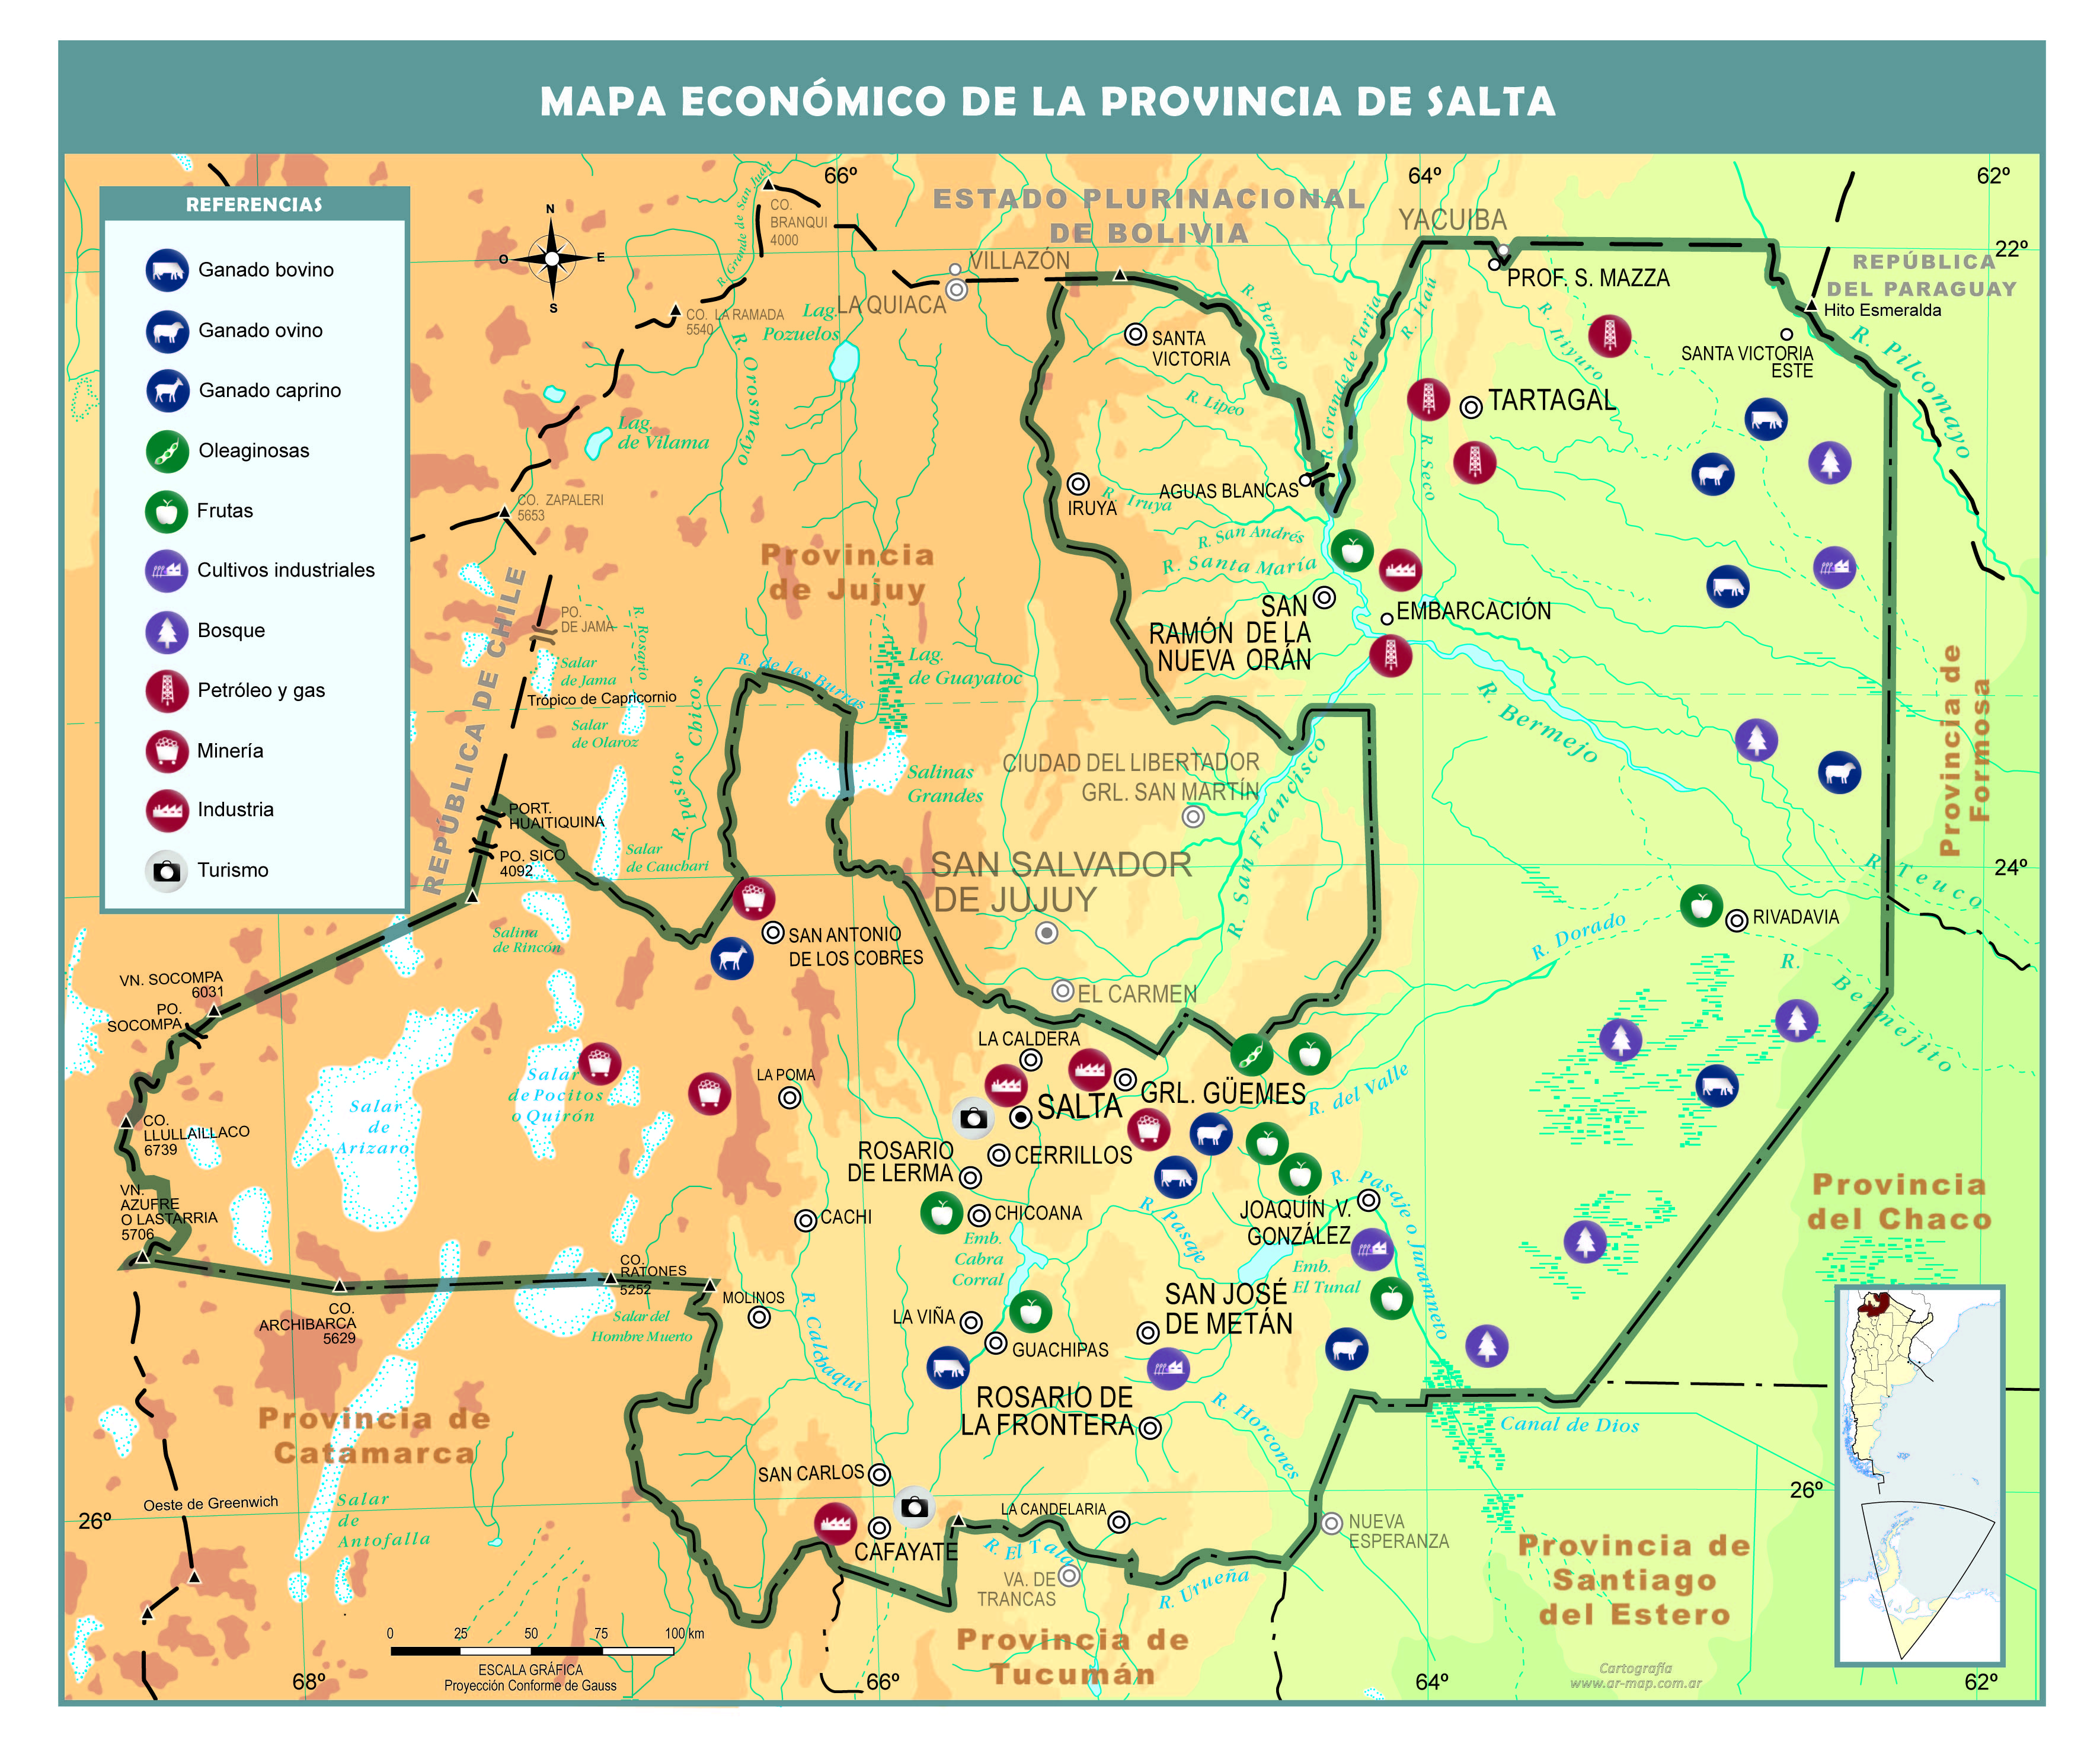 Mapa económico de la provincia de Salta